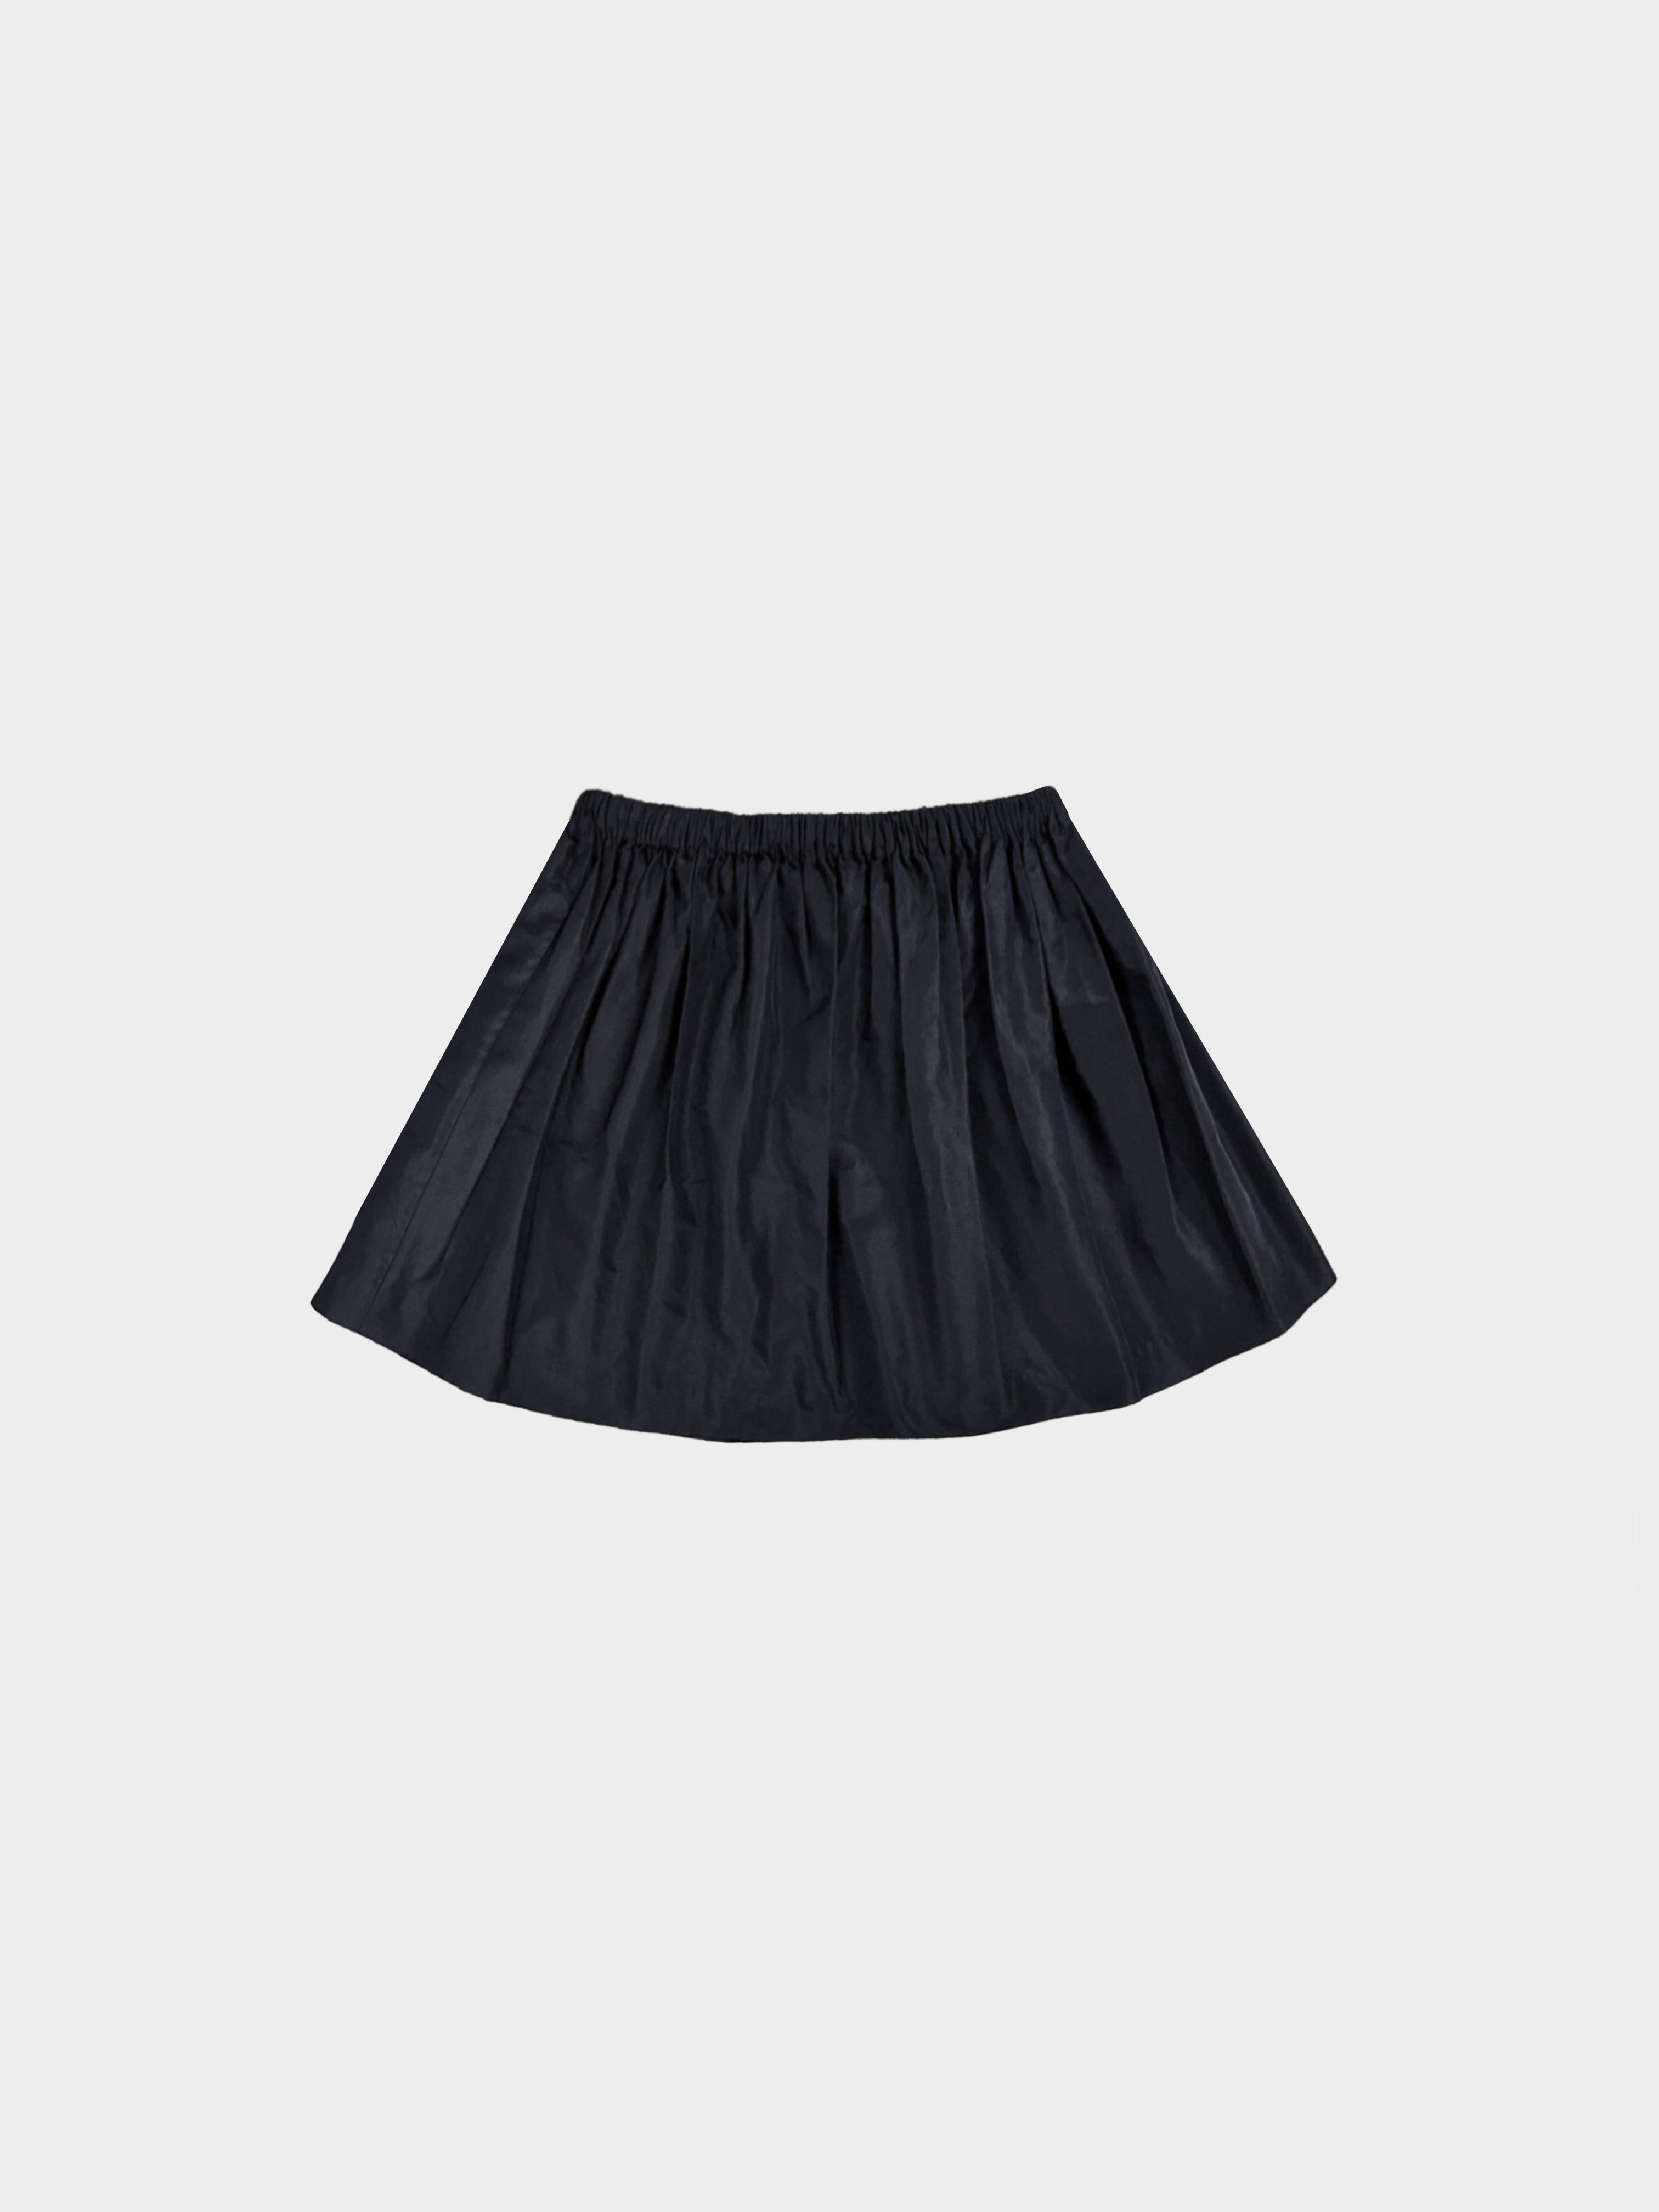 Miu Miu 2010s Flared Faille Mini Skirt